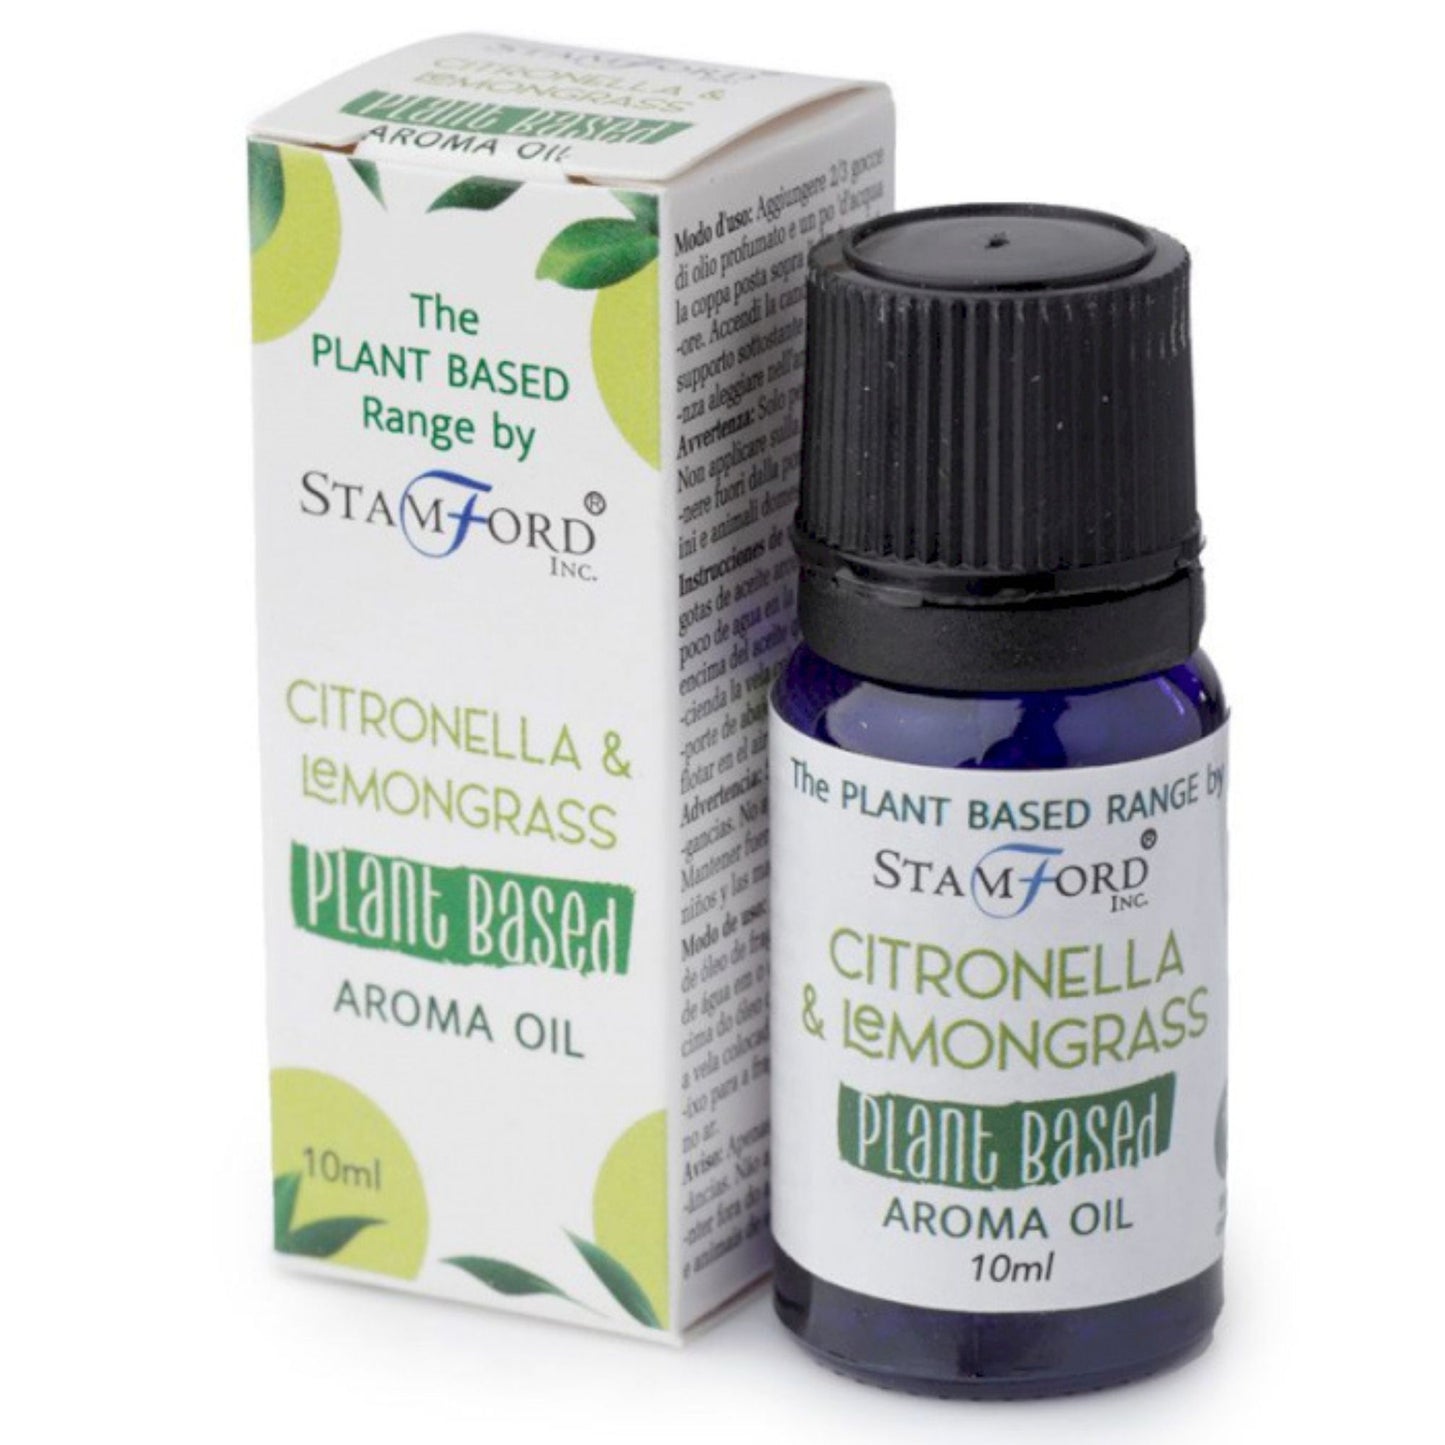 Plant-based Aromatic Oils - Citronella